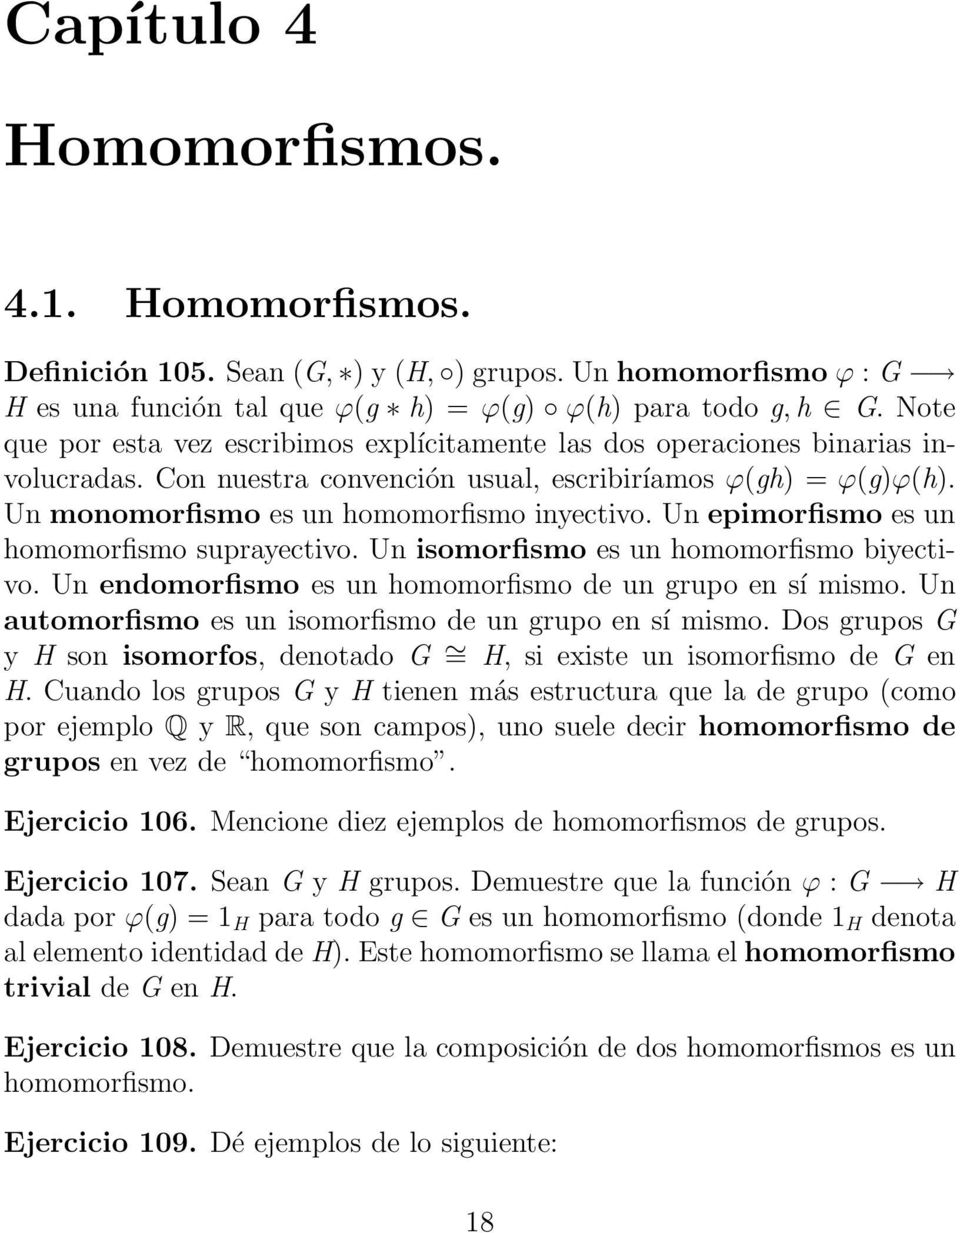 Un epimorfismo es un homomorfismo suprayectivo. Un isomorfismo es un homomorfismo biyectivo. Un endomorfismo es un homomorfismo de un grupo en sí mismo.